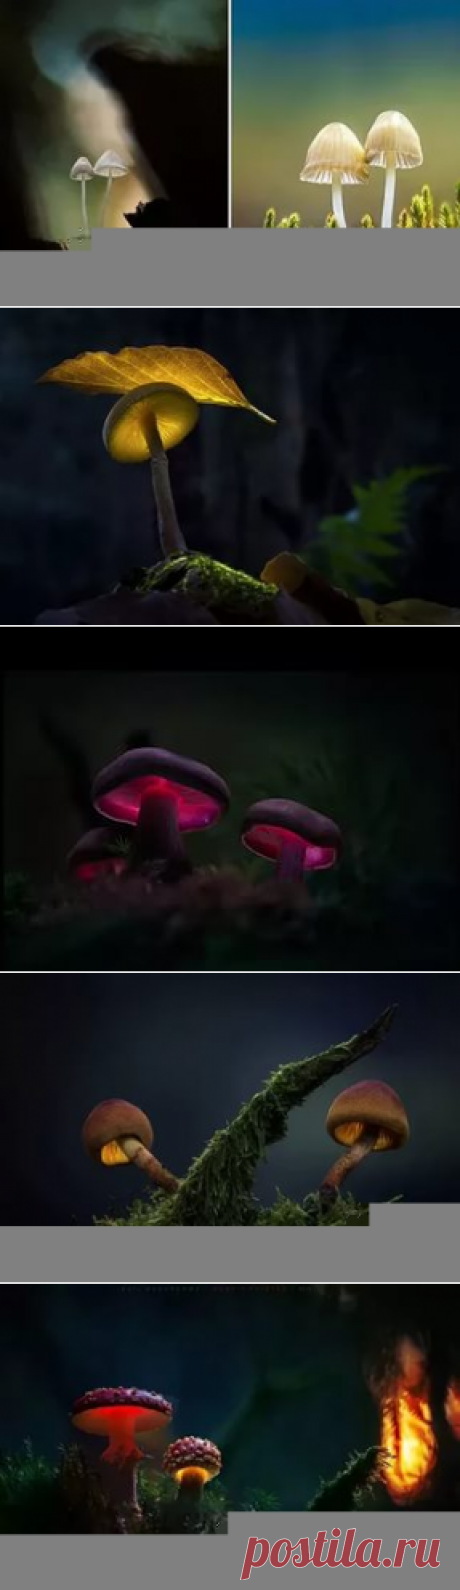 сказочные грибы в фотографиях martin pfister: 22 тыс изображений найдено в Яндекс.Картинках